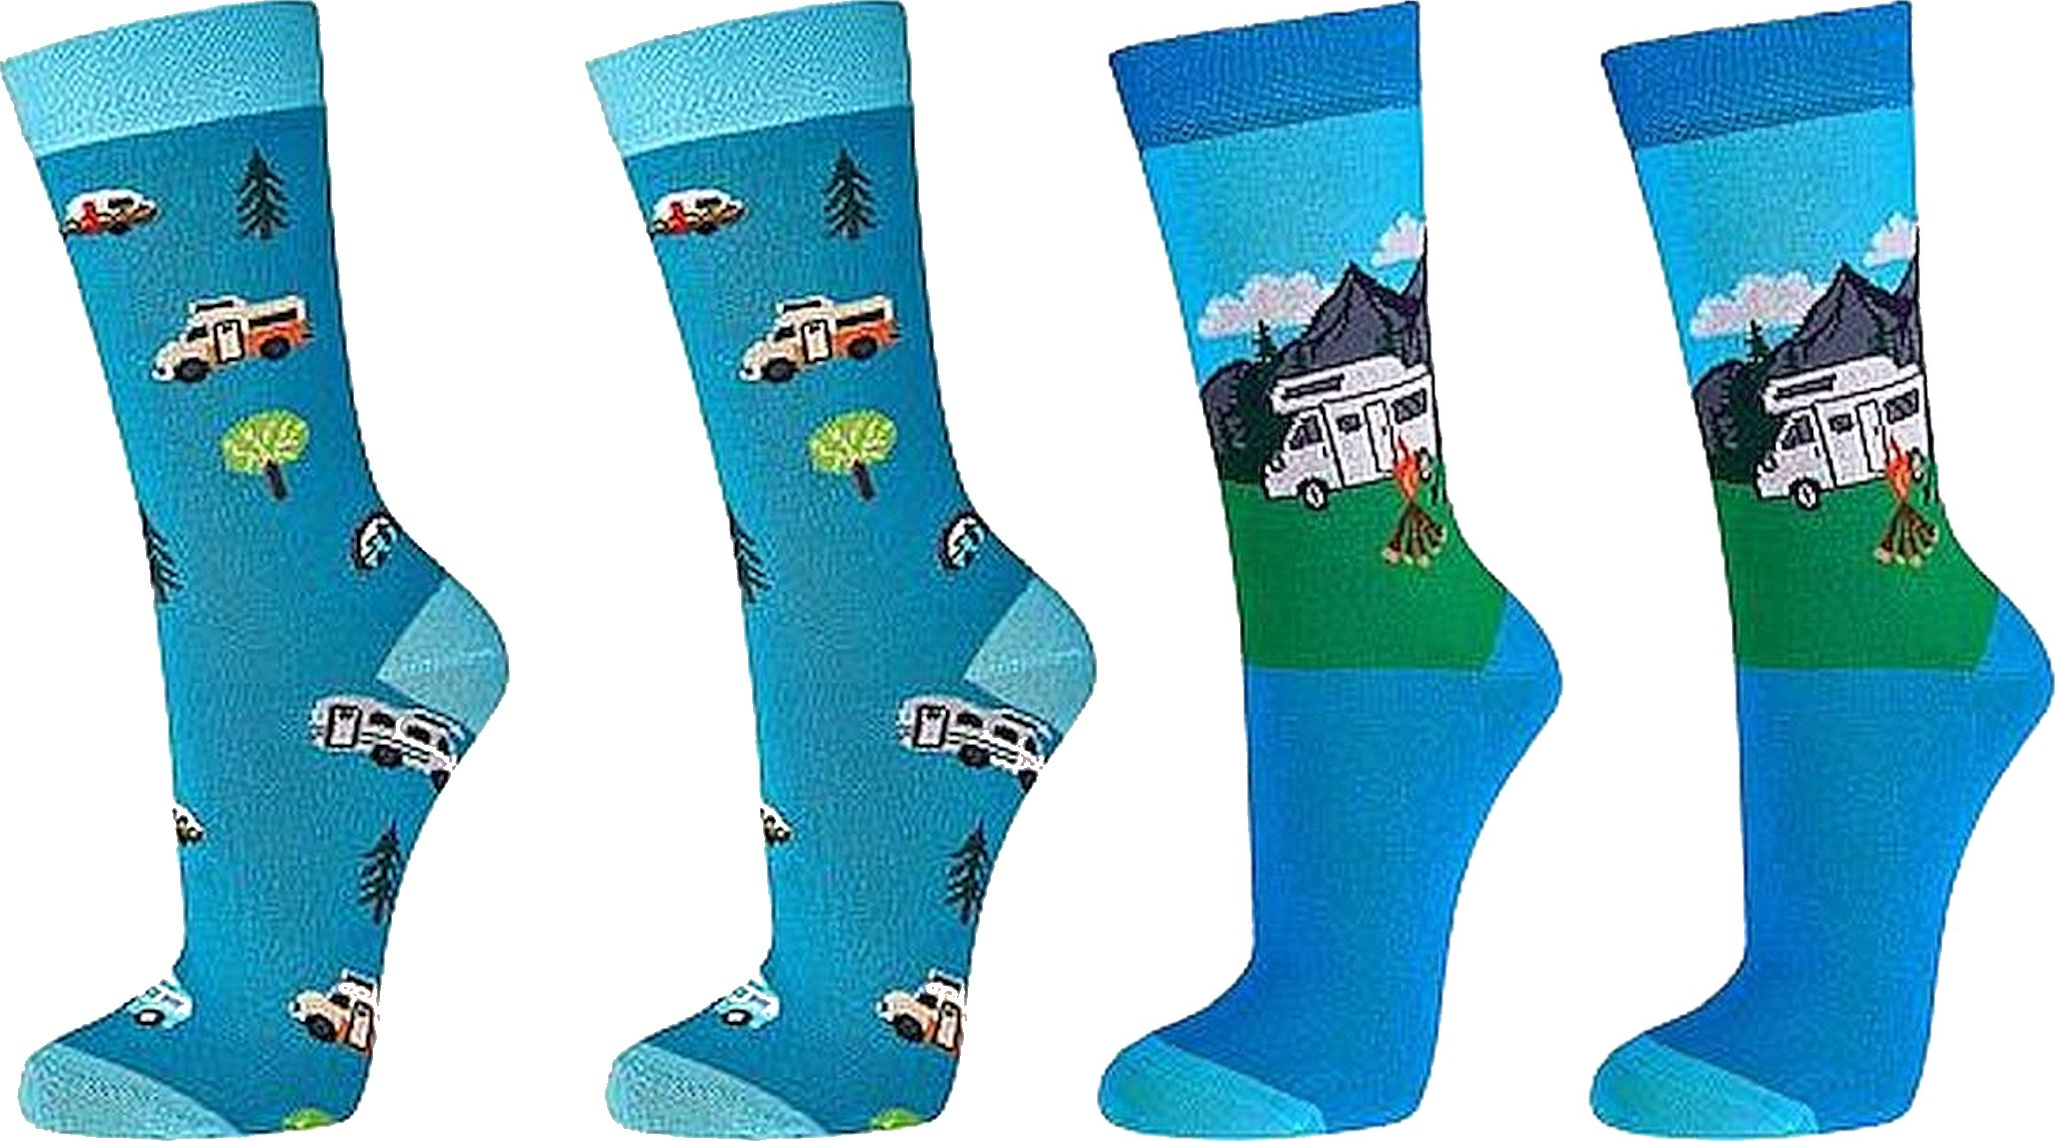  Witzige Socken CAMPING - SOCKS 4 FUN - Mehr Spaß im Alltag für Teenager, Damen und Herren, 2 Paar